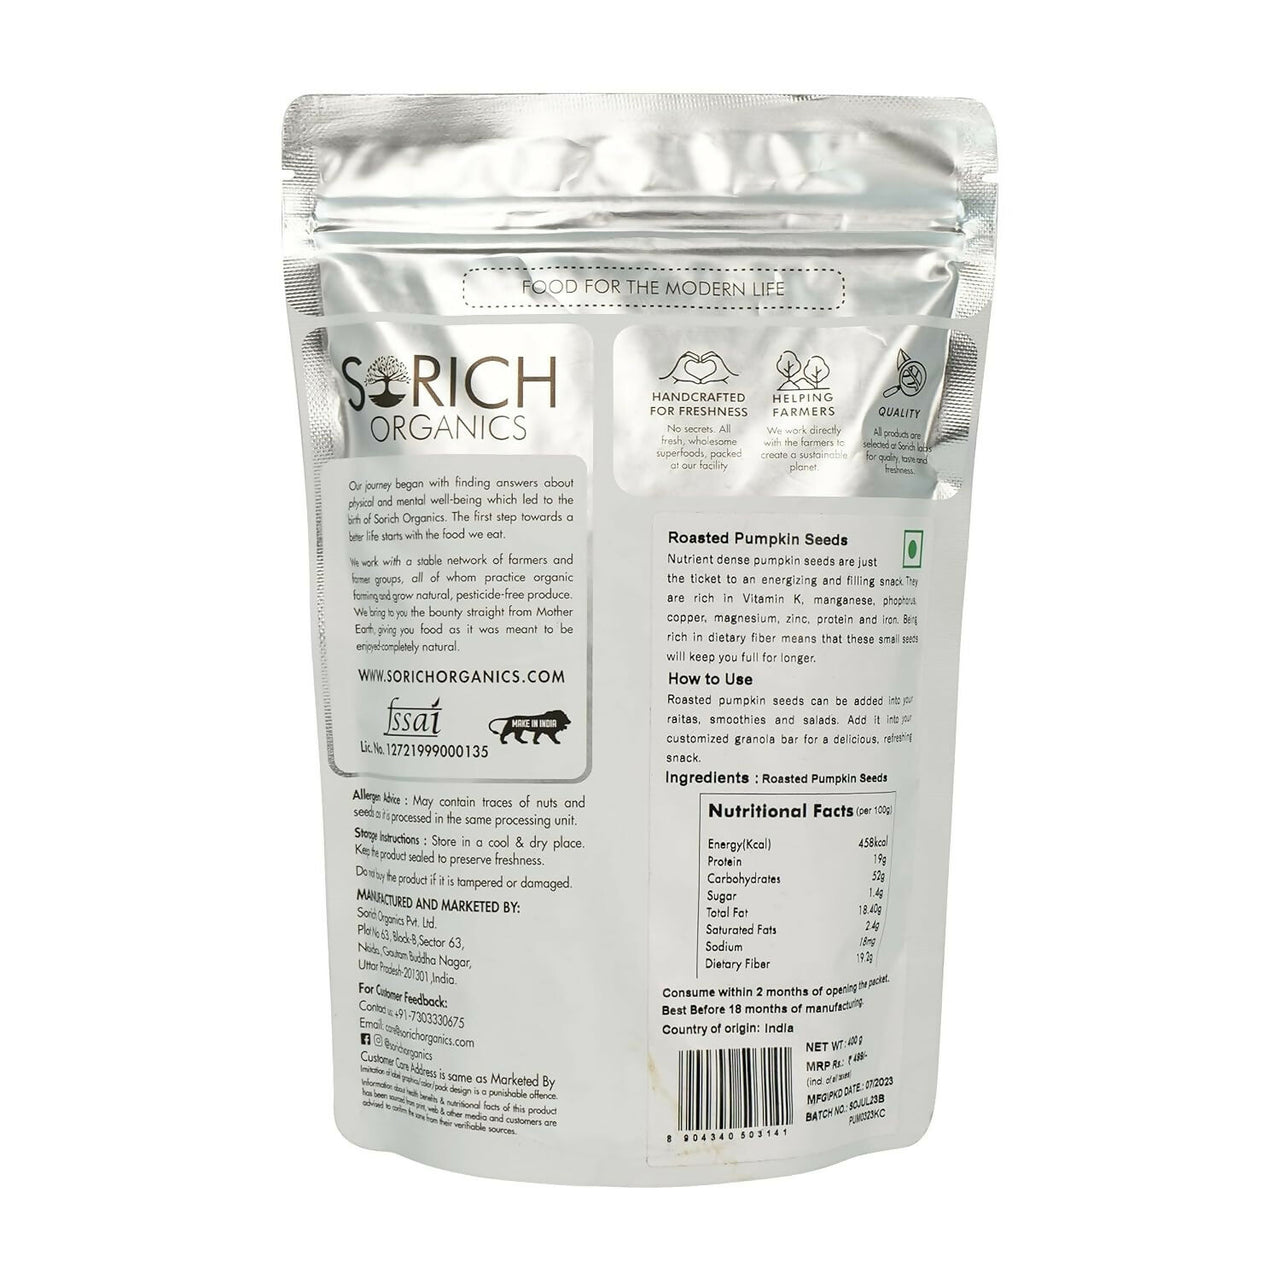 Sorich Organics Roasted Pumpkin Seeds - Distacart